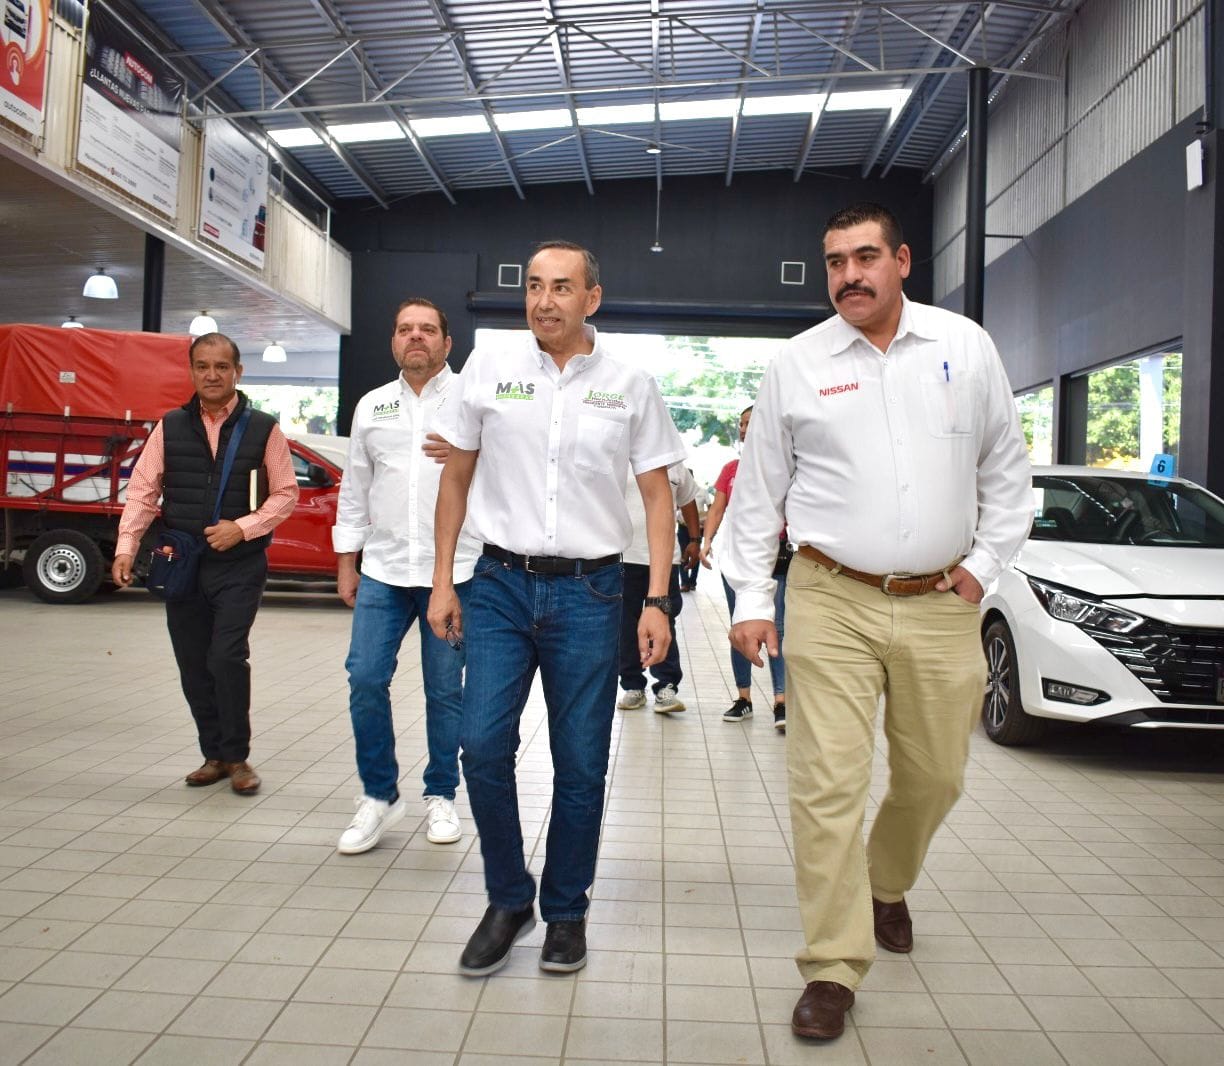 Jorge Hernández estuvo atento a las demandas de los trabajadores y directivos de Mueblería Antua y Nissan Autocom